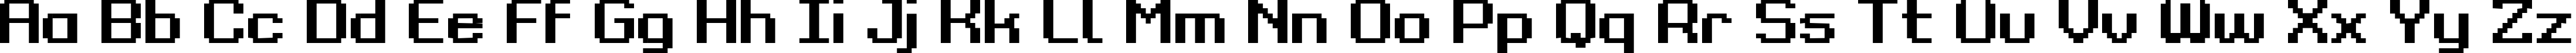 Пример написания английского алфавита шрифтом Grixel Kyrou 9 Regular Bold